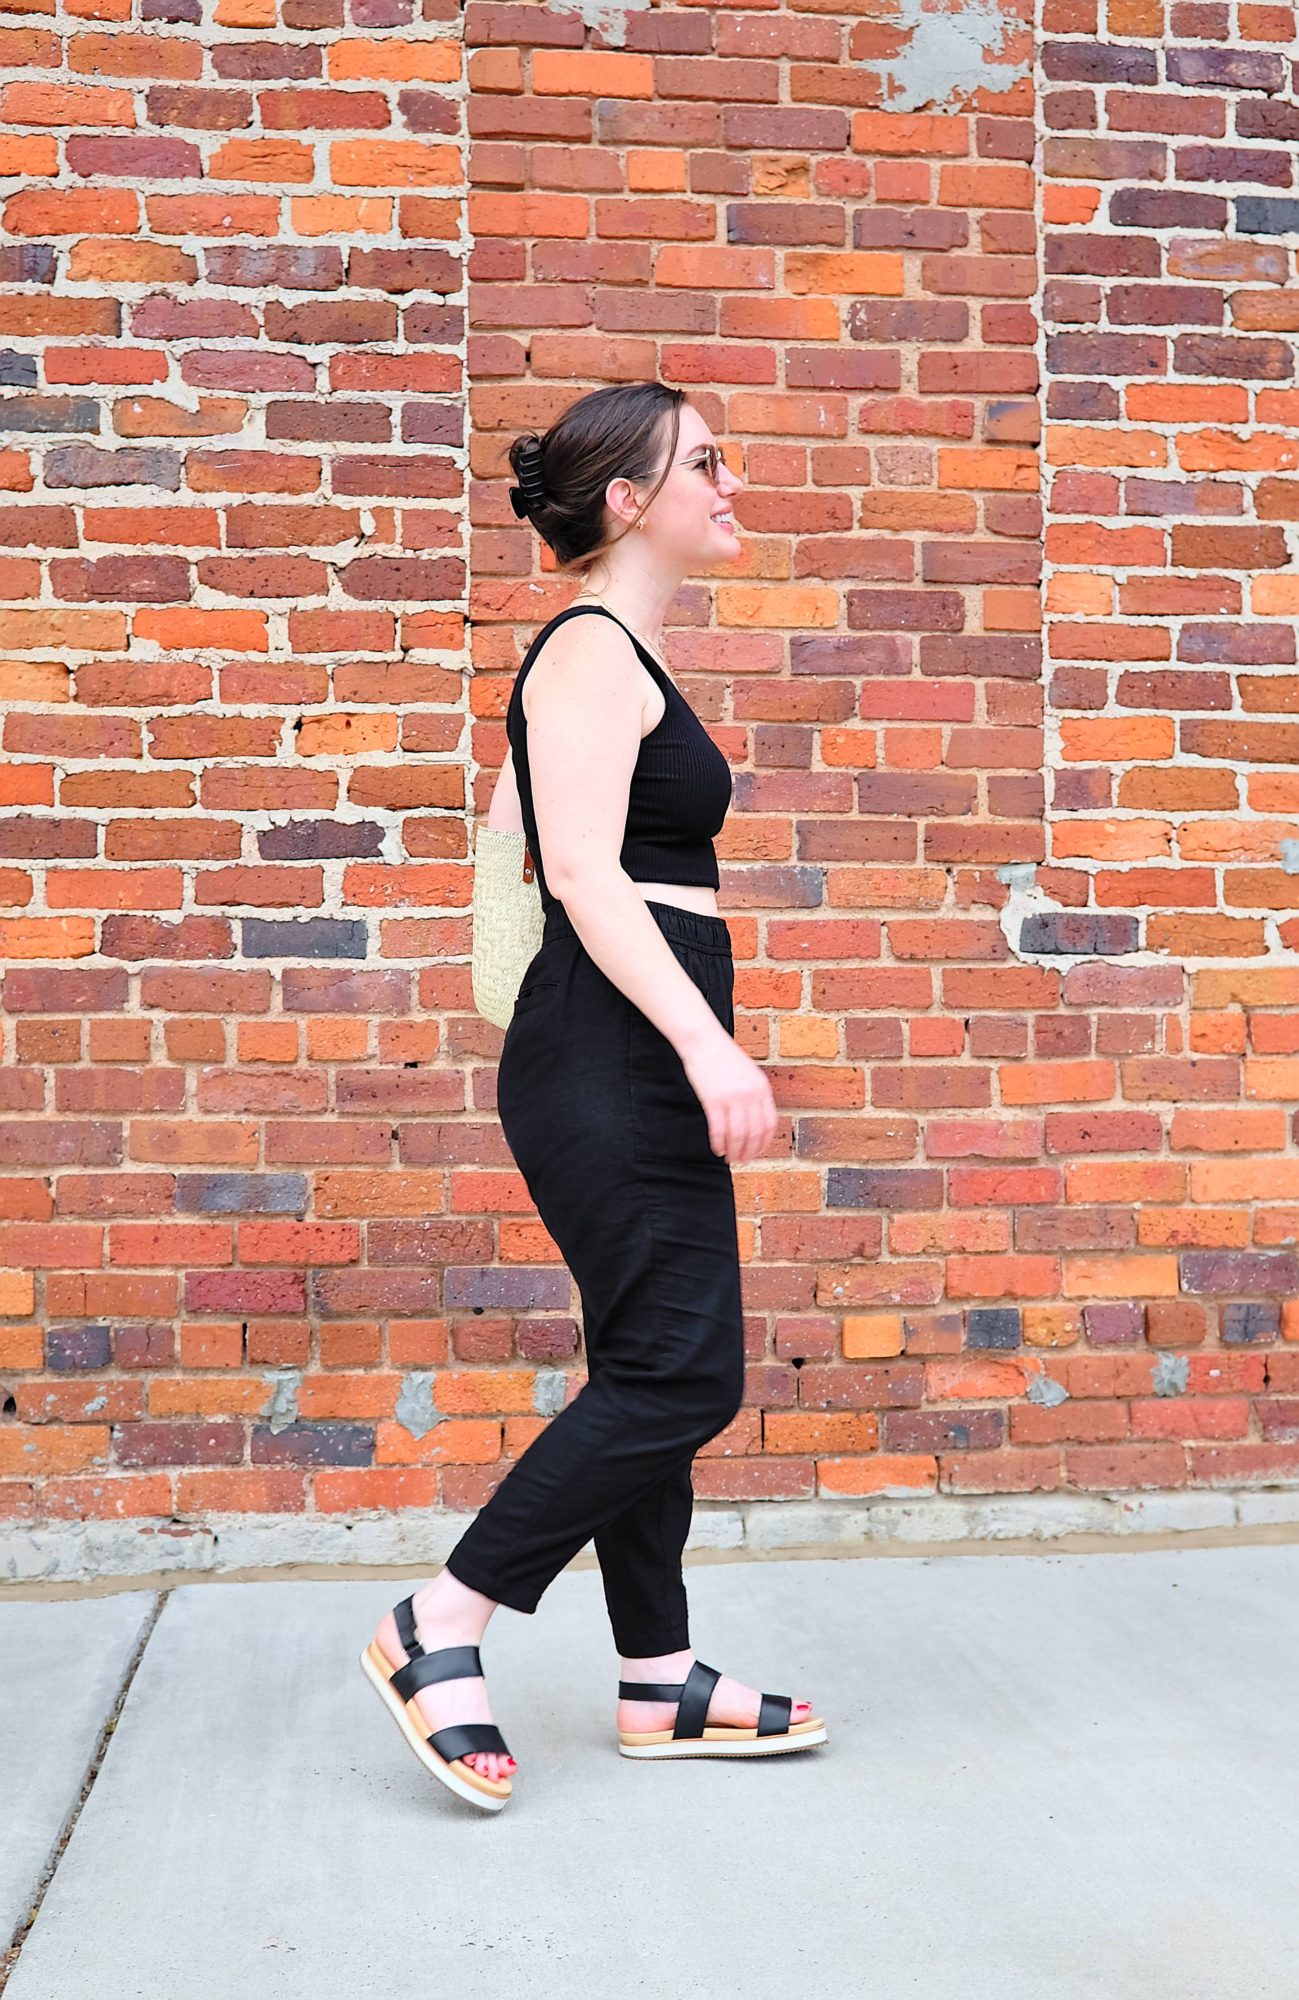 Alyssa walks on a sidewalk while wearing the Flatform sandals